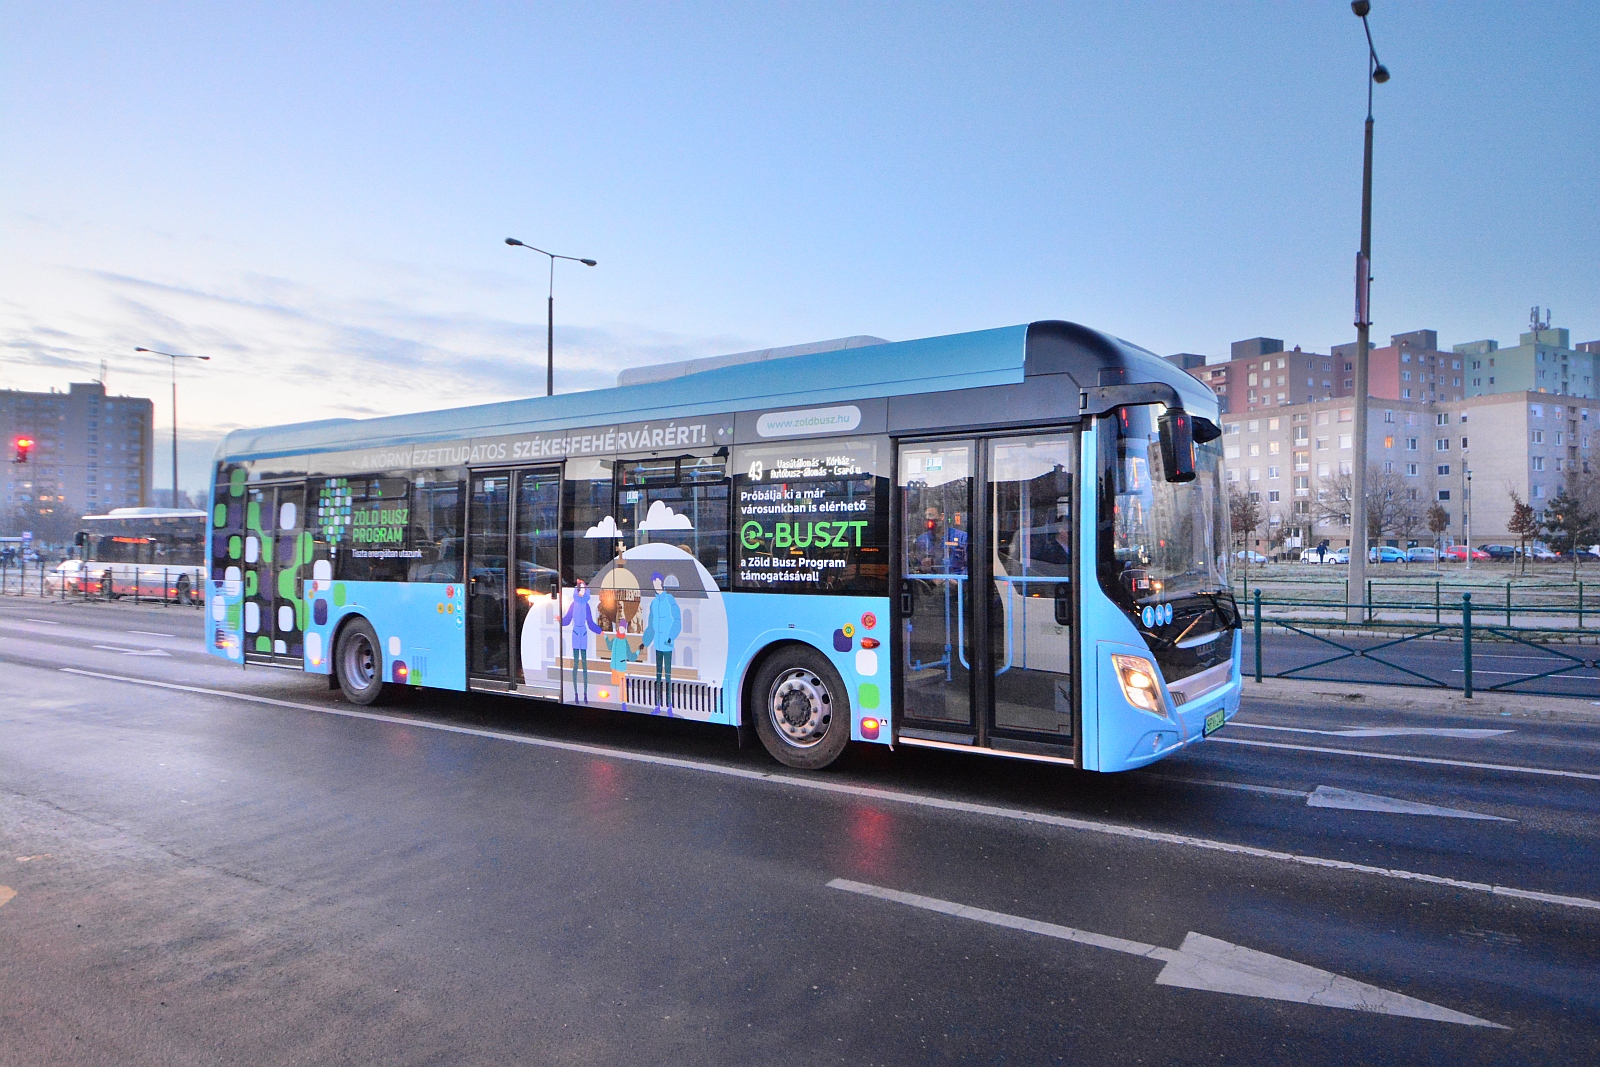 Hétfőtől egy hónapon keresztül tesztelik az elektromos buszt a városi tömegközlekedésben